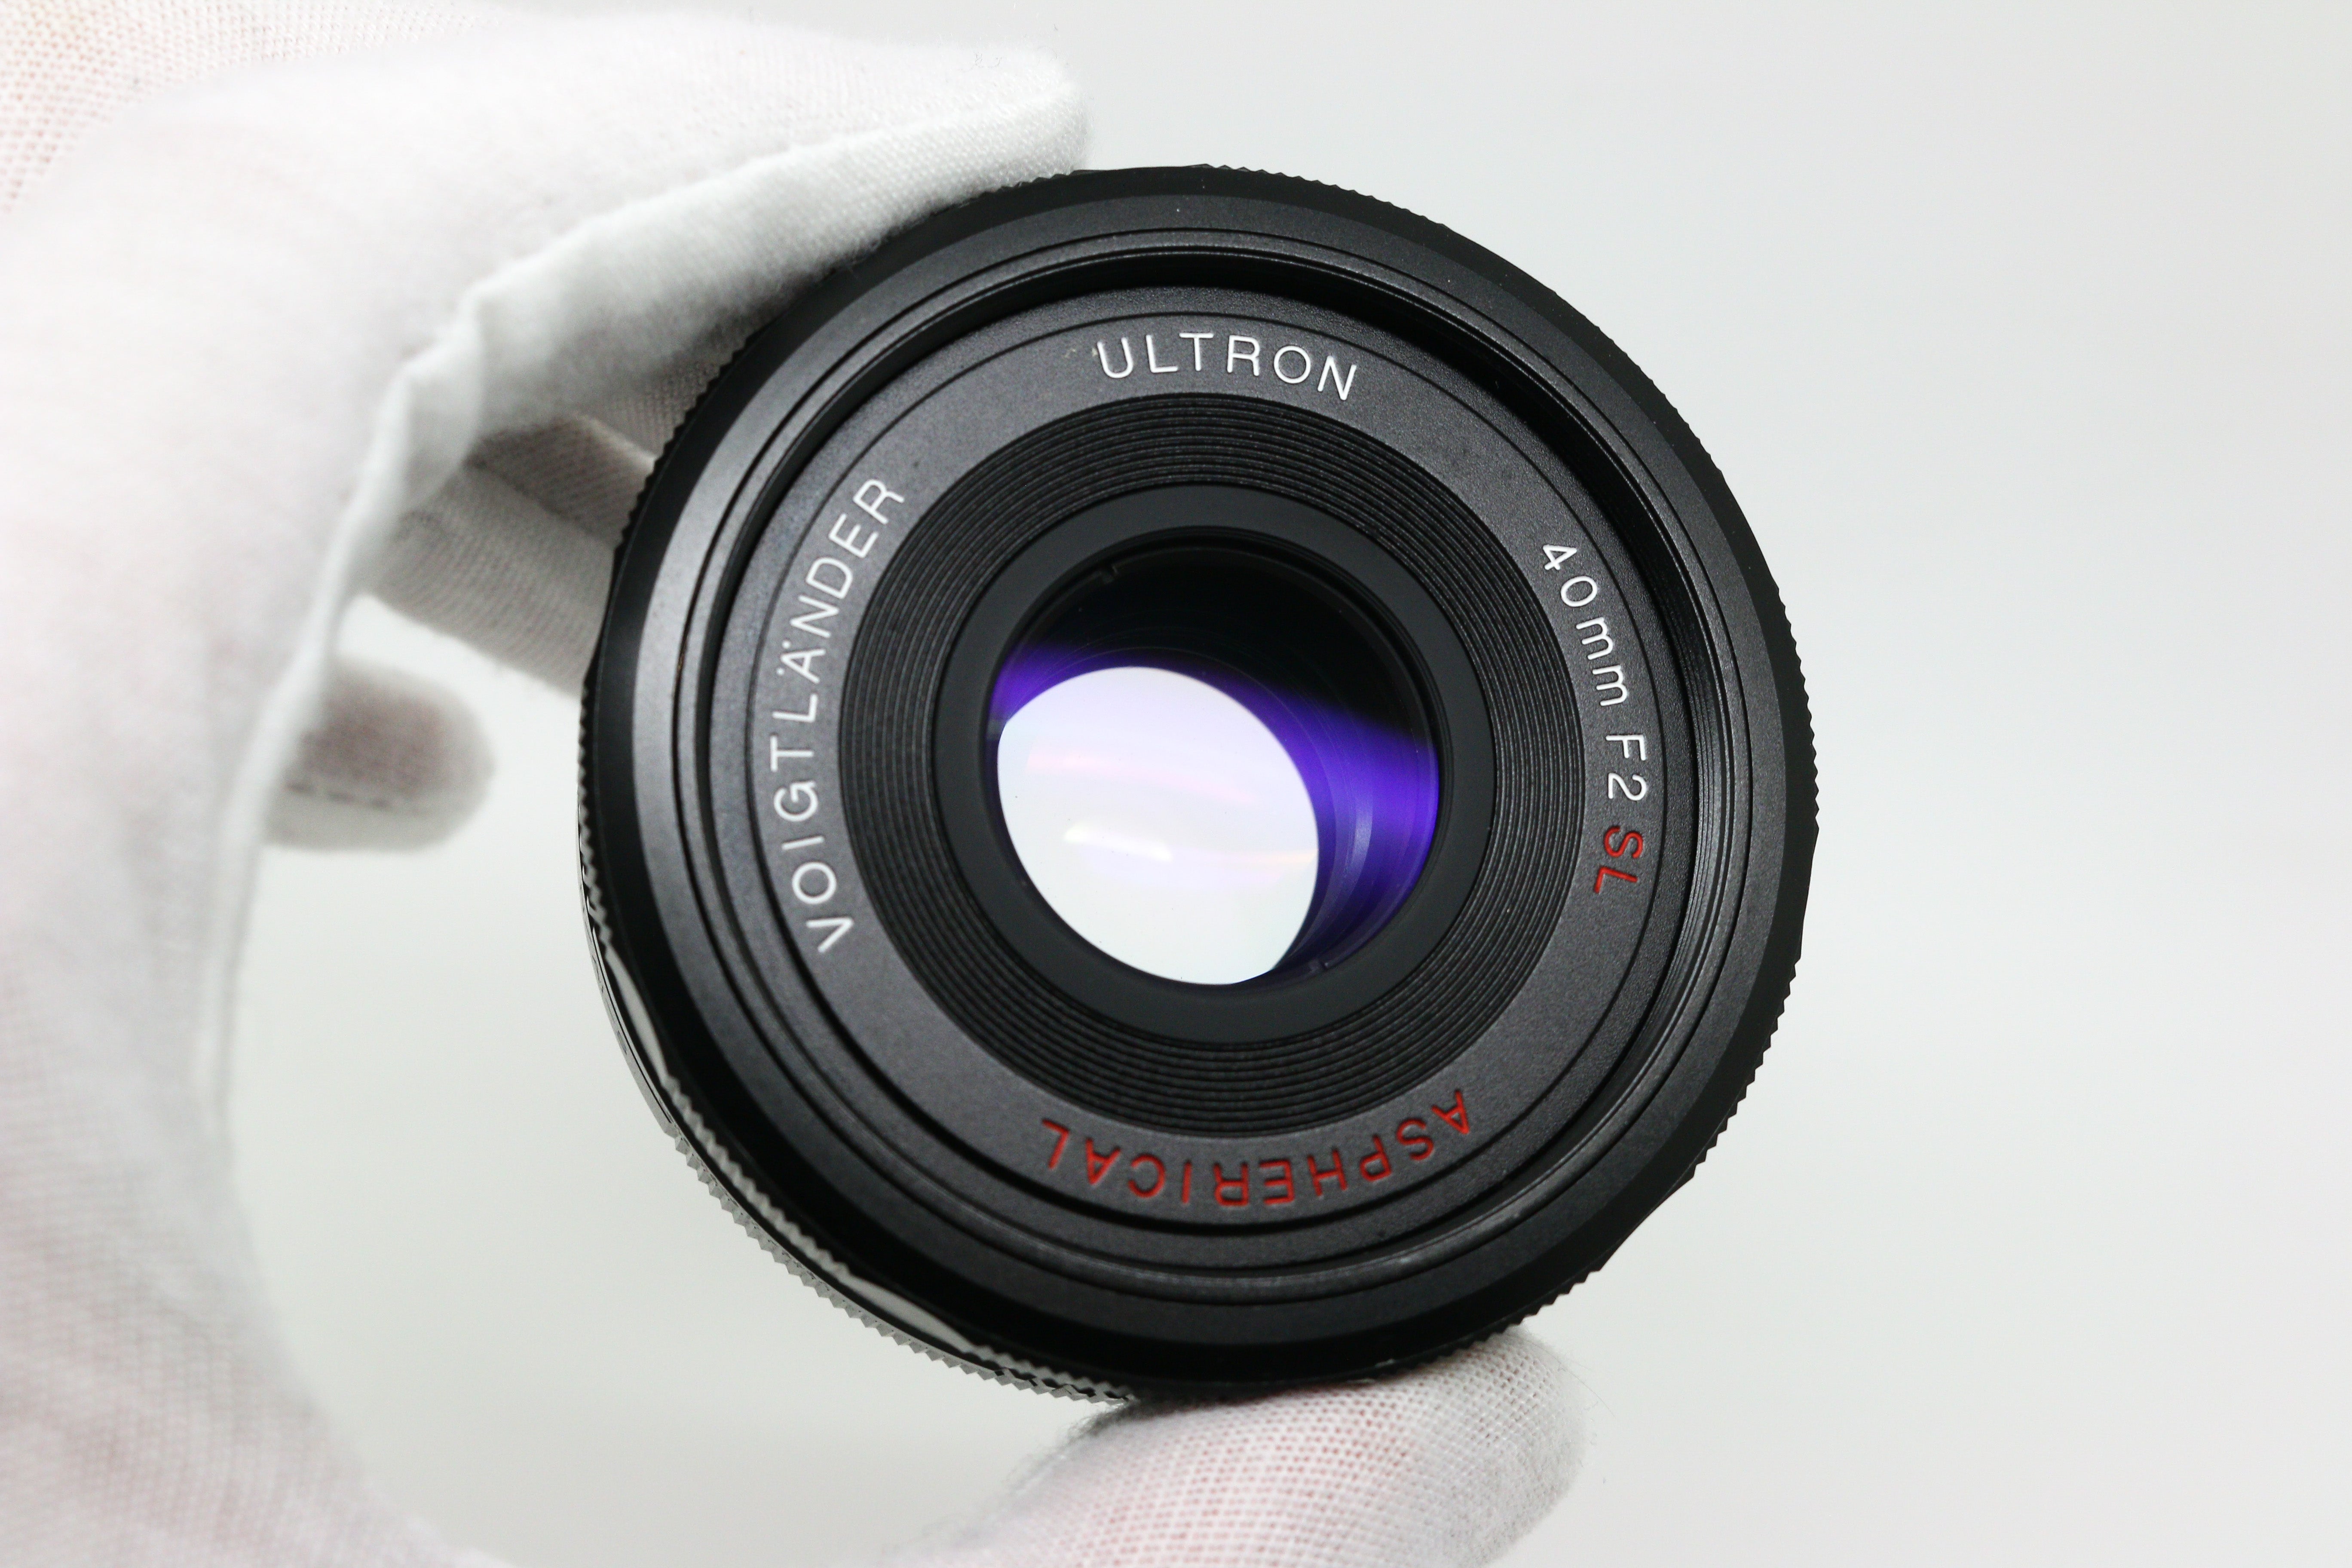 Voigtländer 40mm f/2 SL-II N Aspherical Lens (Nikon F-Mount)